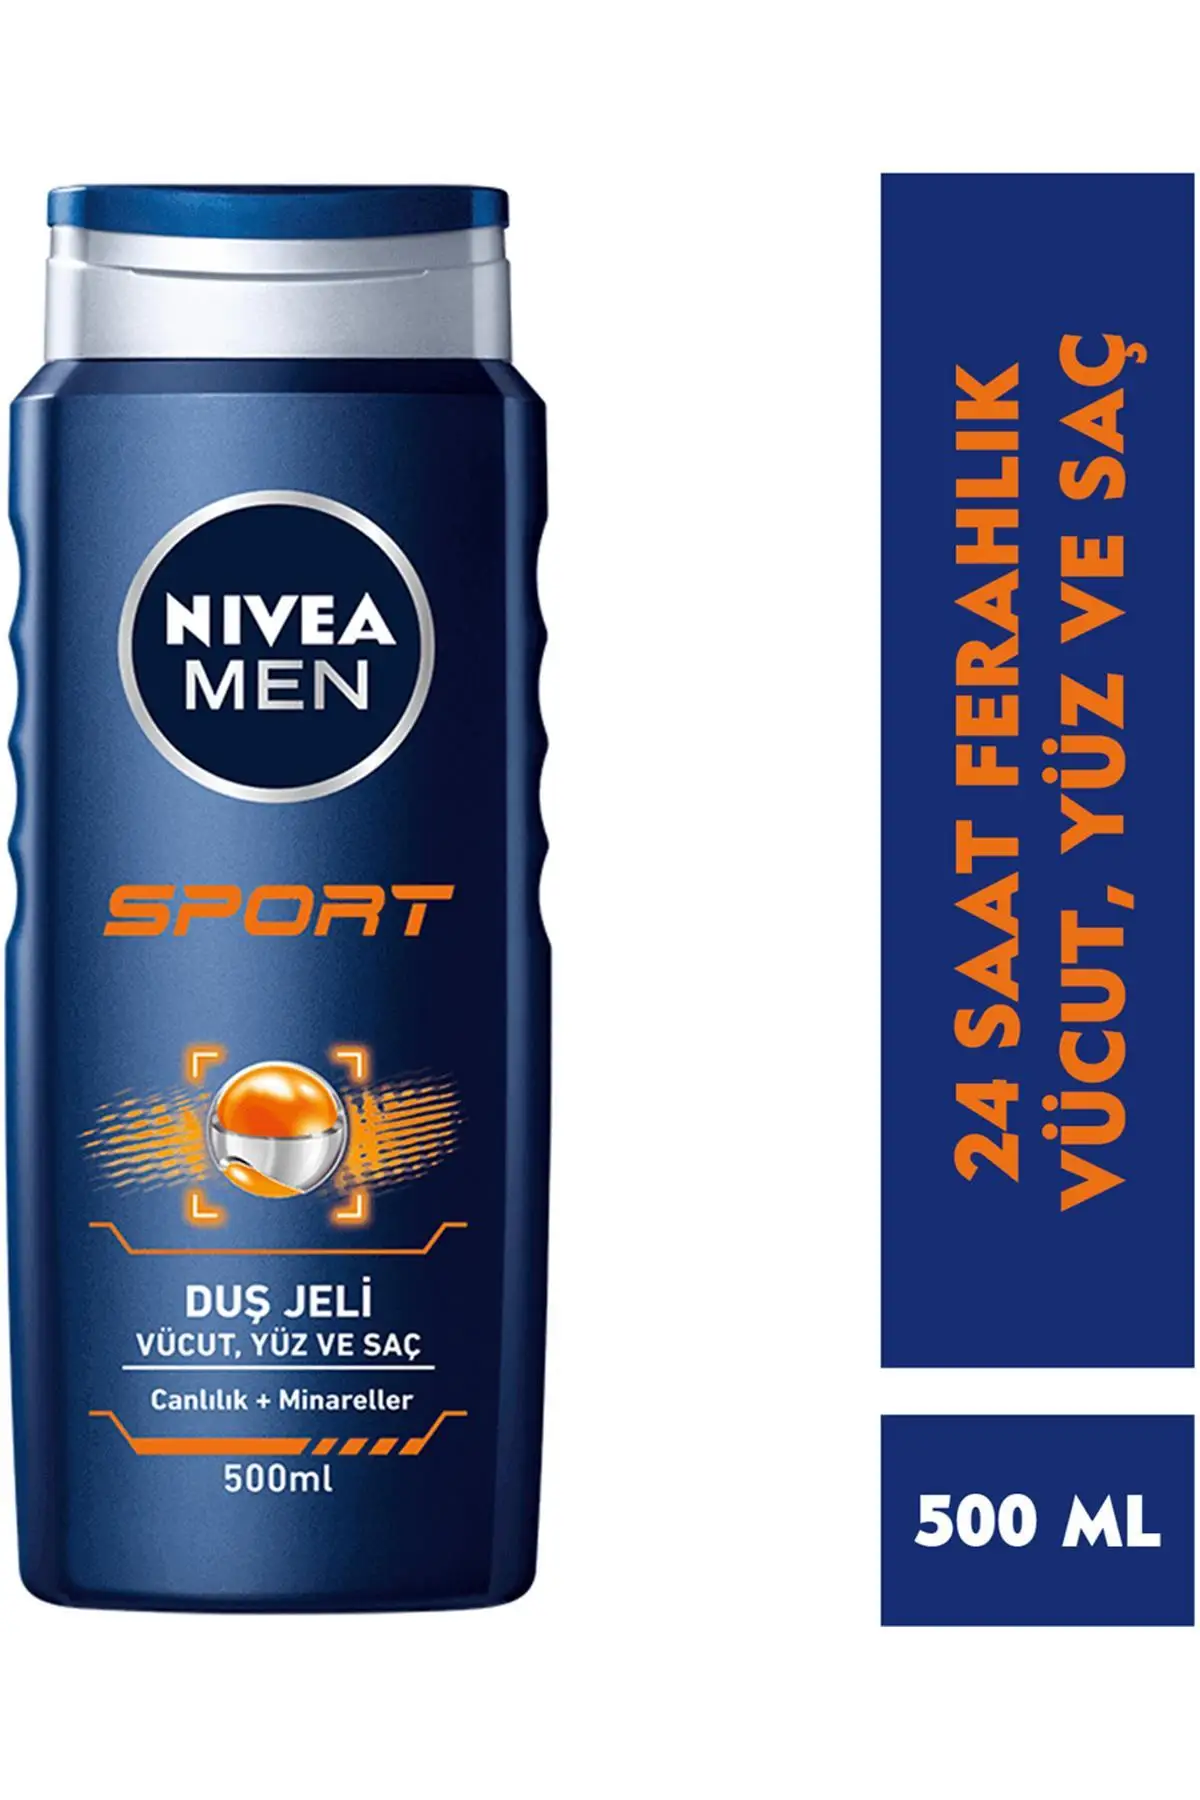 

Бренд: Nivea Men Sport 1 сочетание геля для душа для мужчин 500 мл Категория: гель для душа